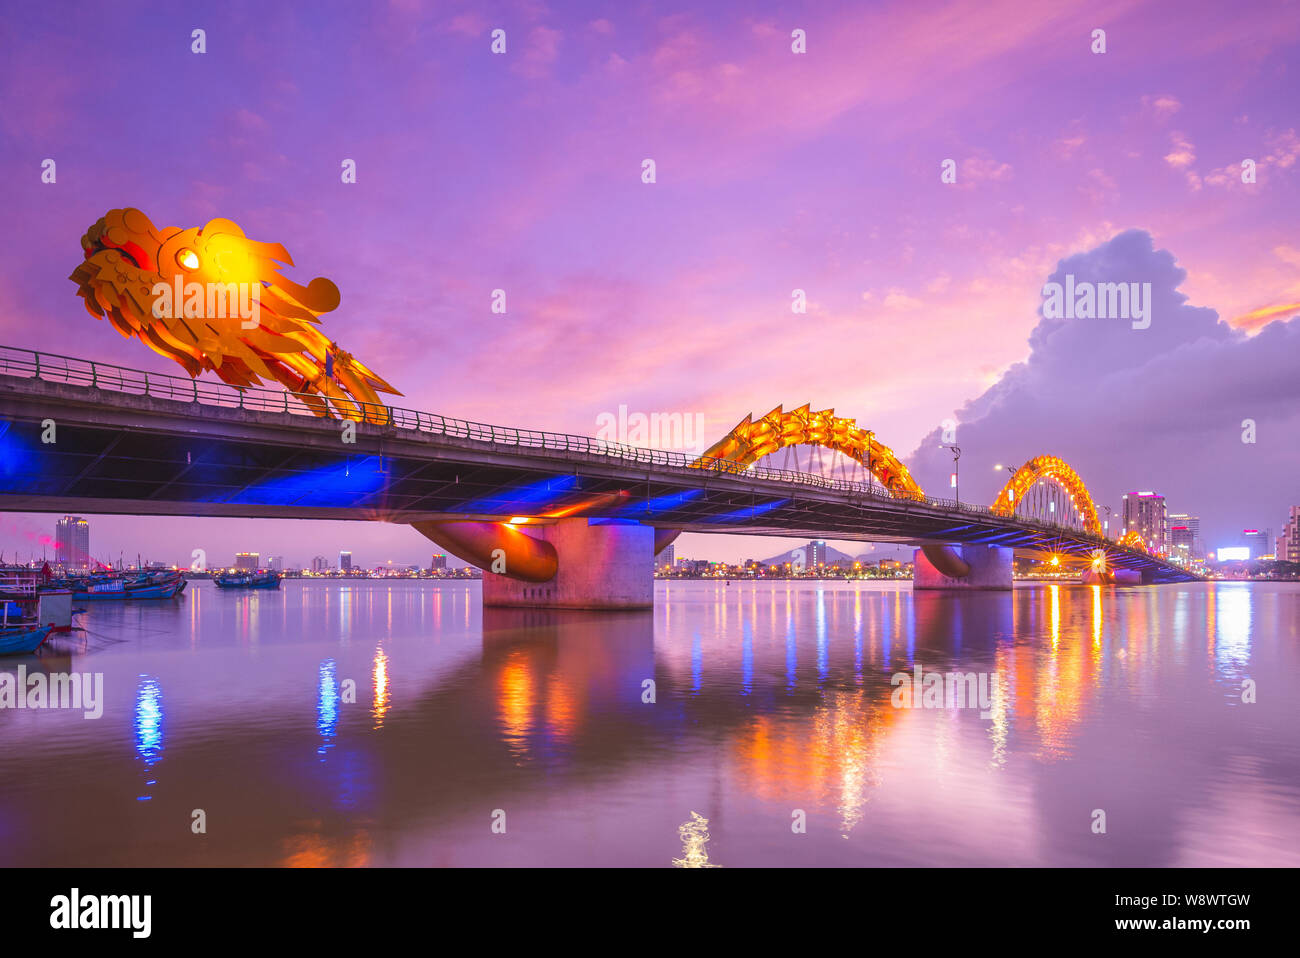 Dragon bridge Vietnam: Chiêm ngưỡng Dragon Bridge tại Việt Nam, một trong những cây cầu nổi tiếng nhất và đẹp nhất trên thế giới. Với kiến ​​trúc độc đáo, cây cầu này tự hào là điểm đến văn hóa và lịch sử của Đà Nẵng. Hãy tận hưởng vẻ đẹp độc đáo của Dragon Bridge trong sự kỳ diệu của ánh sáng đêm và tiếng nhạc cổ điển đặc sắc.